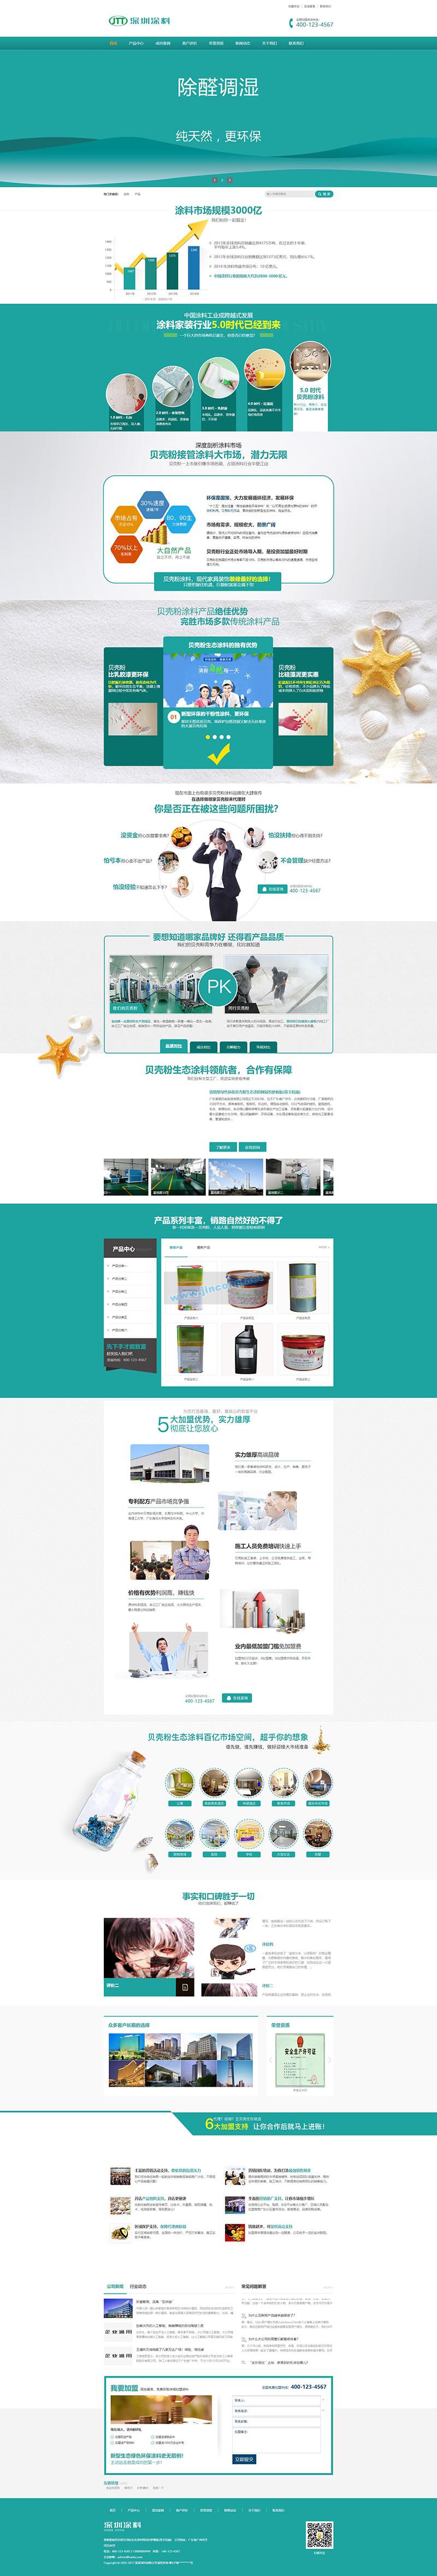 营销型绿色环保贝壳粉生态涂料油漆涂料环保产品网站源码 dedecms织梦模板